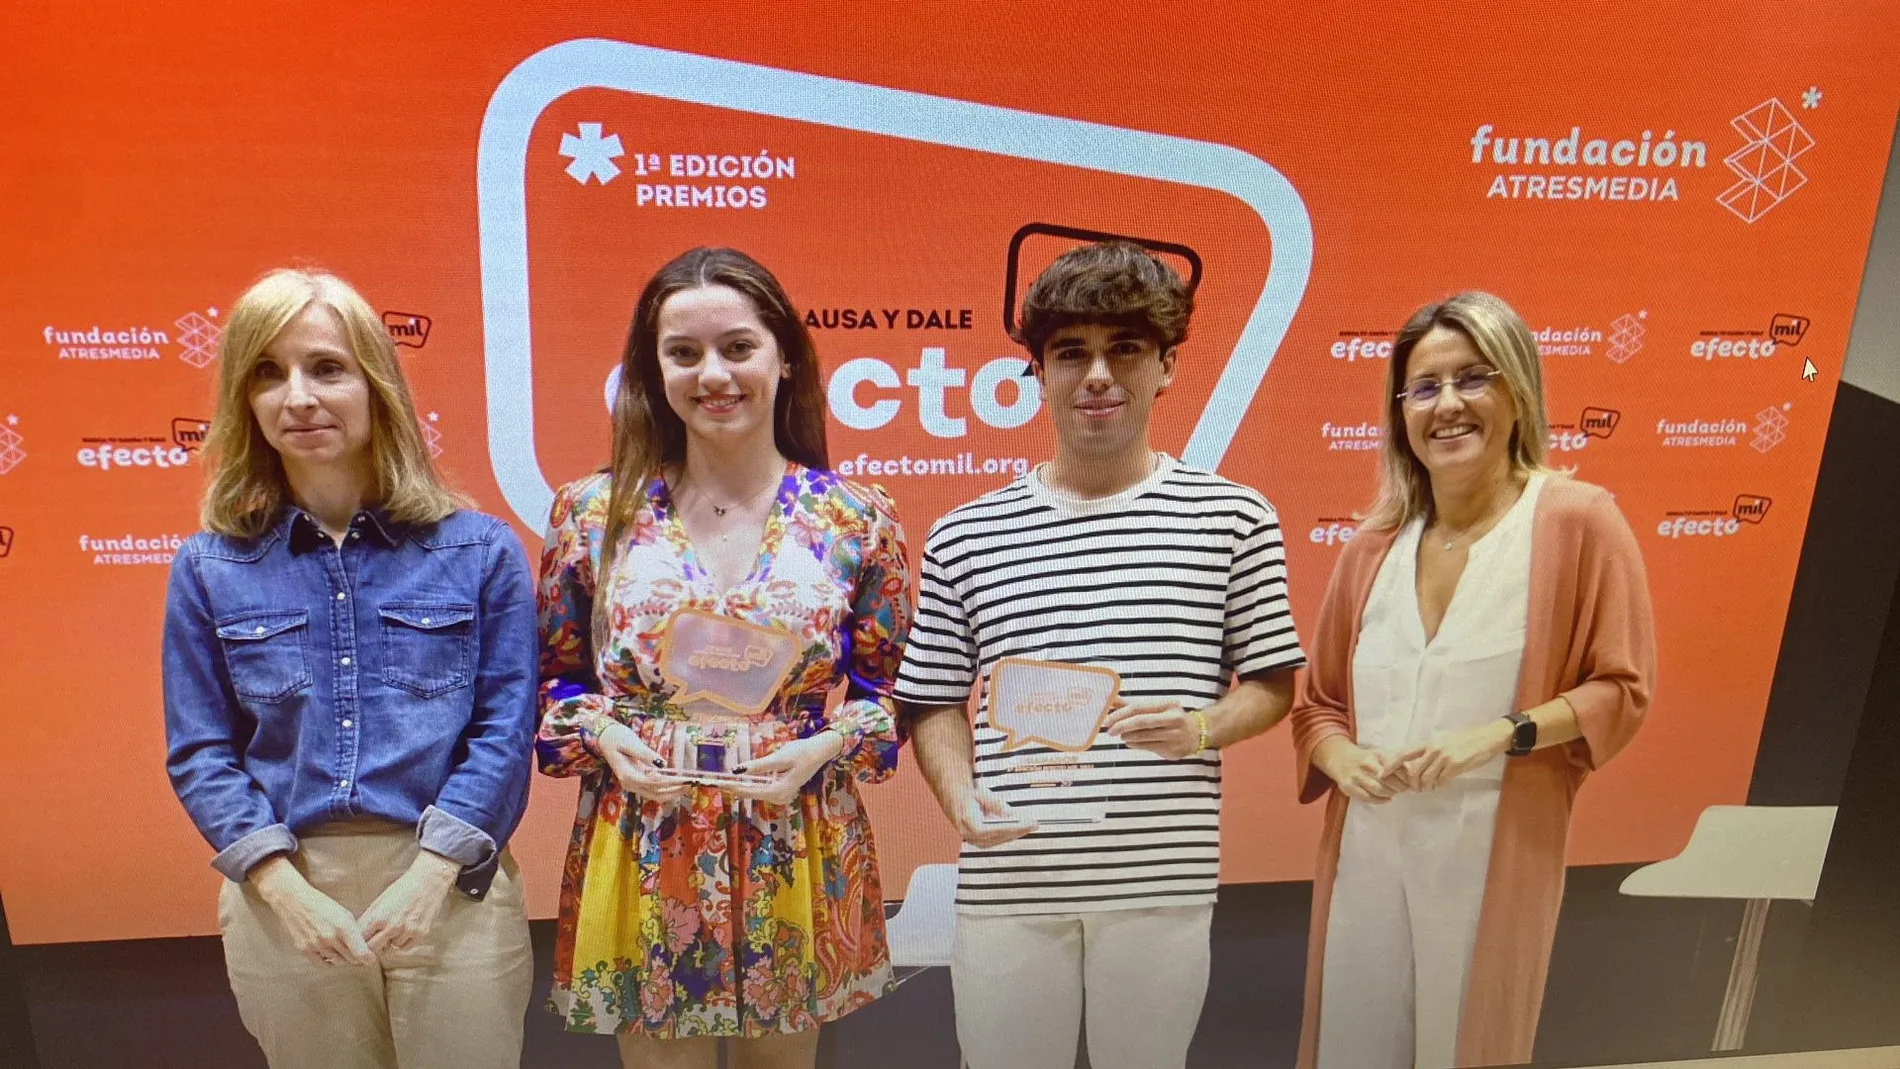 Adrián y María, los premiados, junto a Patricia Pérez y Susana Gato, de Fundación Atresmedia